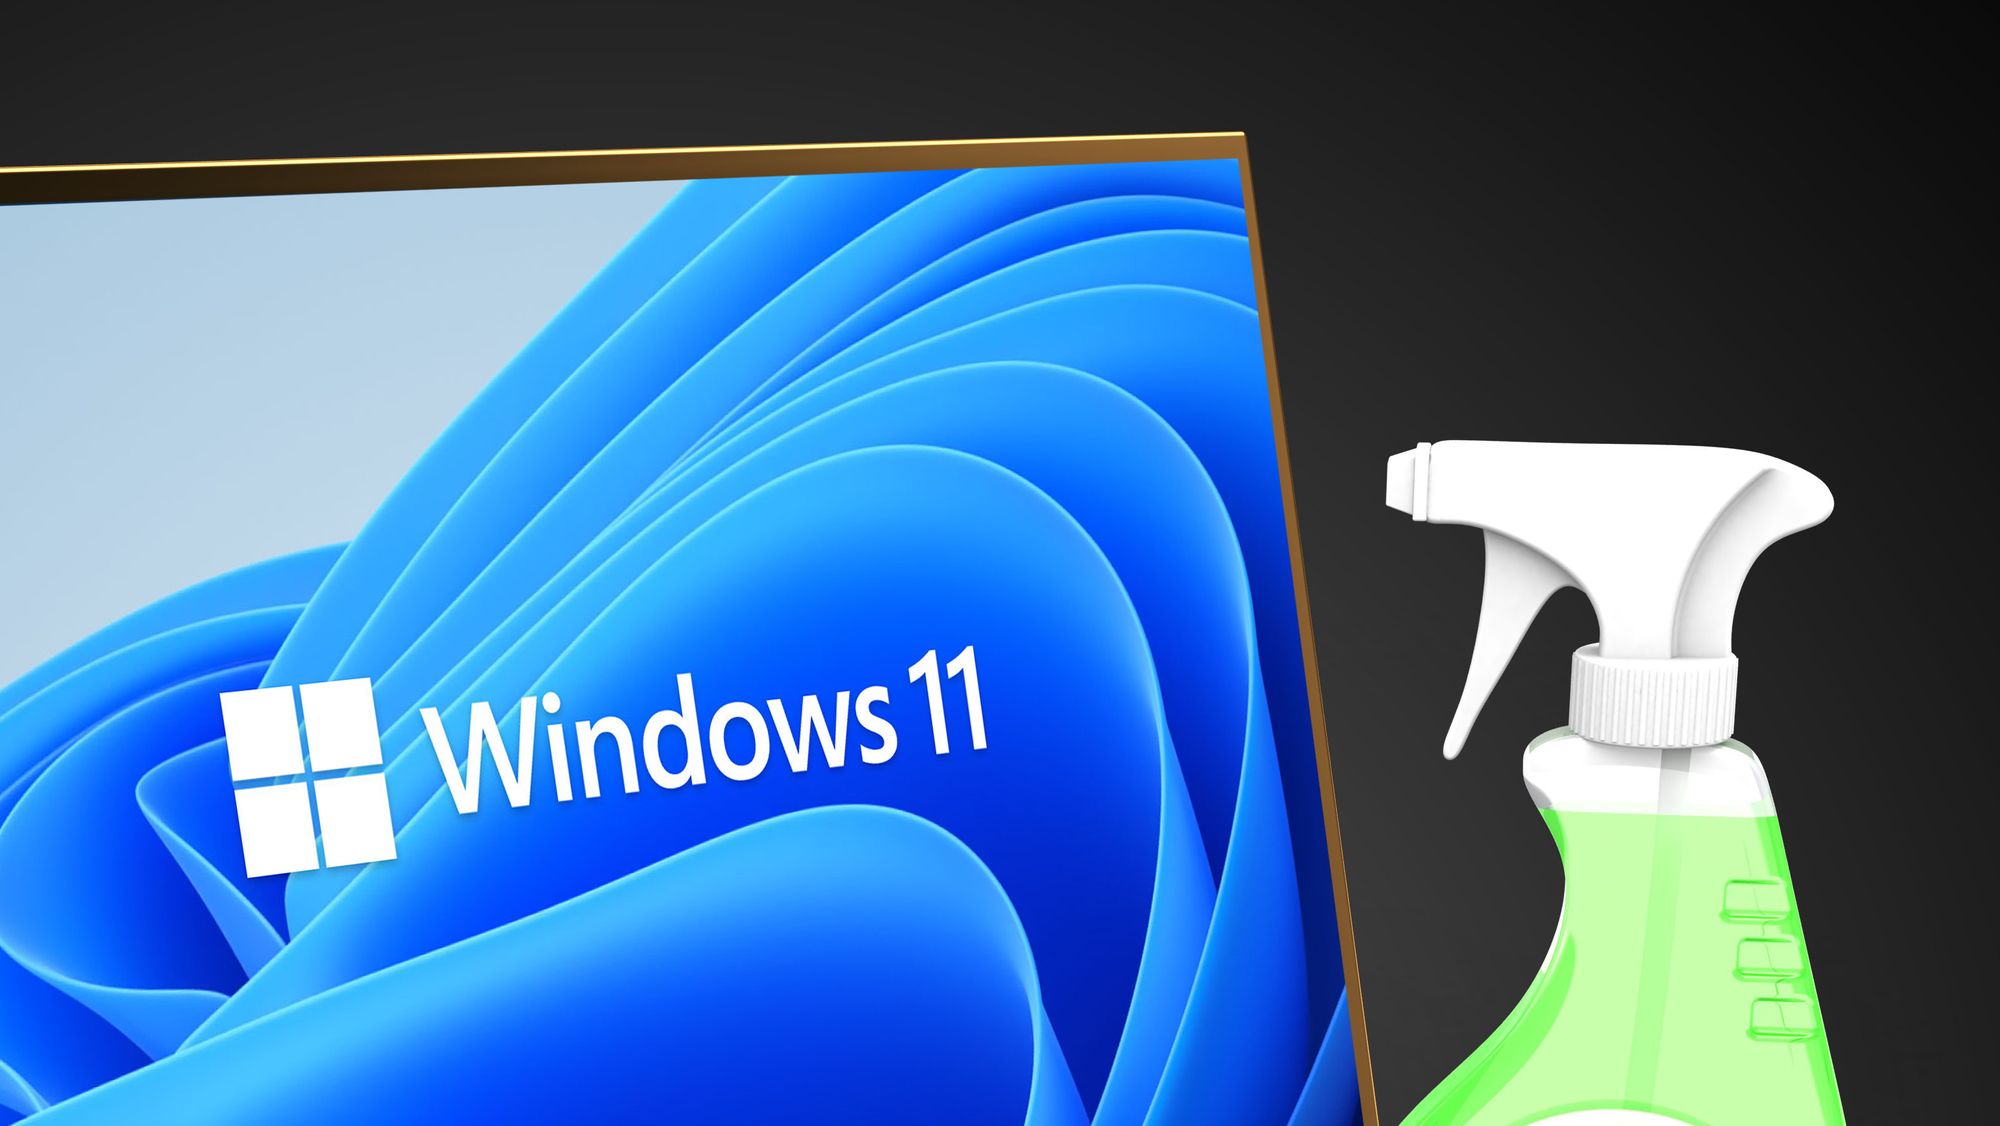 Slik setter du opp Windows 11 uten Microsoft-konto - Digi.no